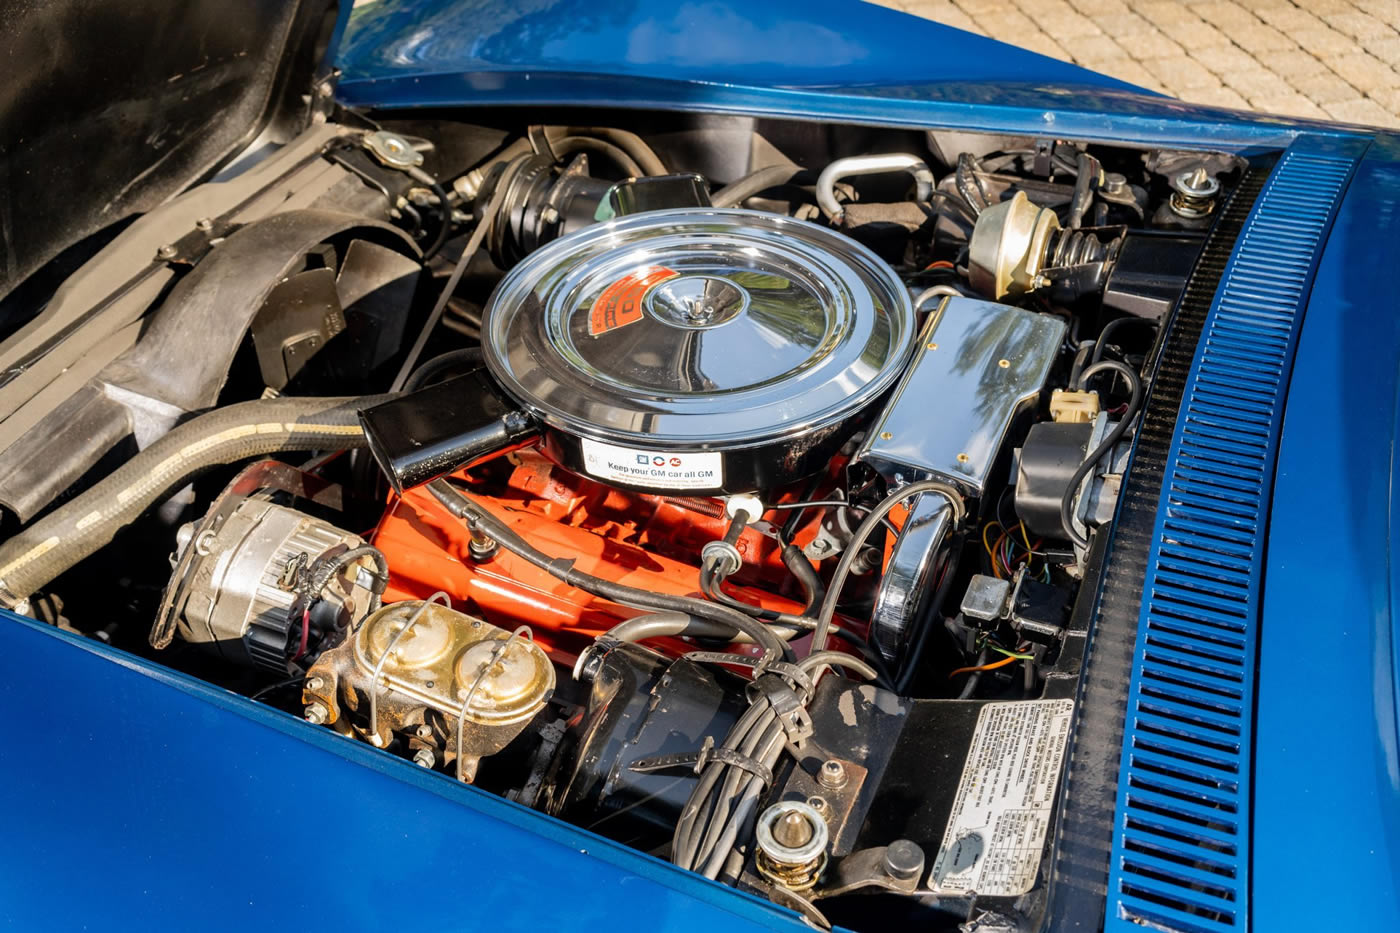 1971 Corvette Coupe in Bridgehampton Blue